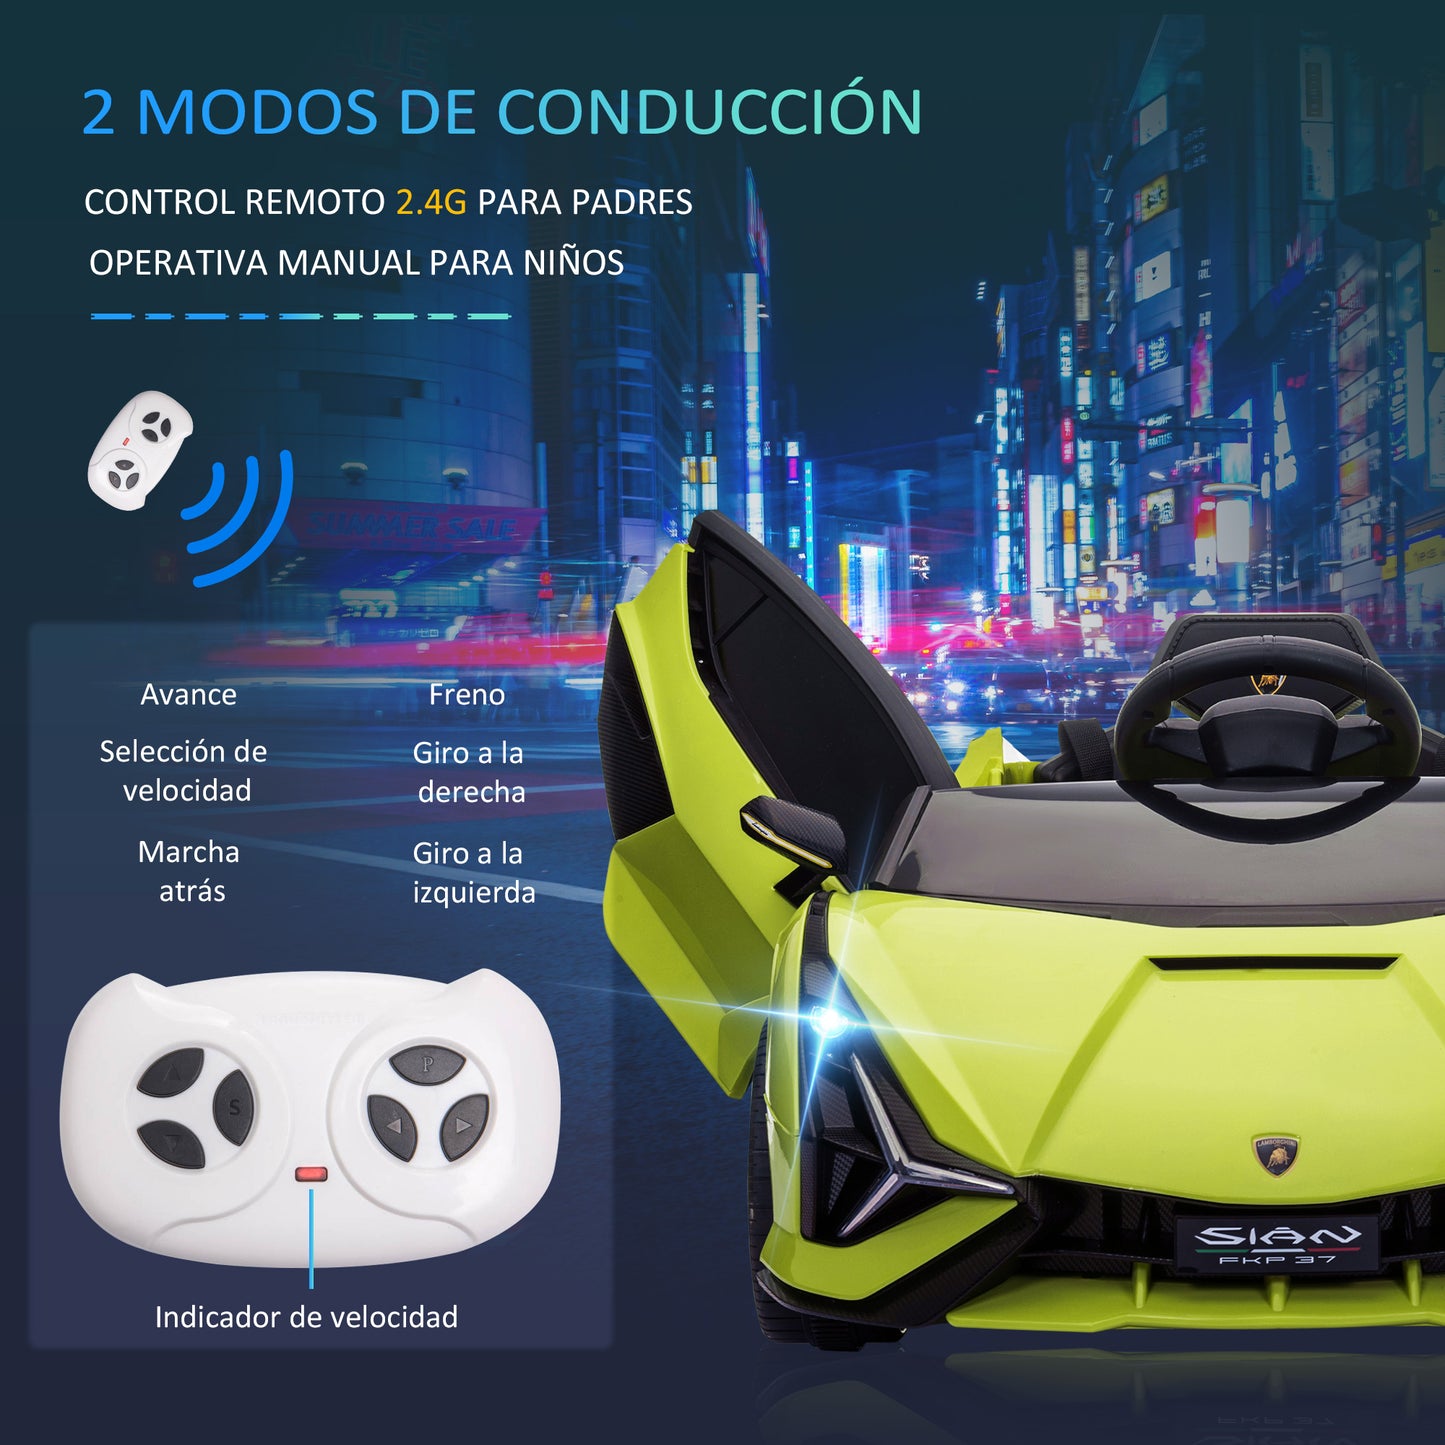 HOMCOM Coche Eléctrico Lamborghini SIAN 12V para Niños de +3 Años con Mando a Distancia Apertura de Puerta Música MP3 USB y Faros 3-5 km/h 108x62x40 cm Verde